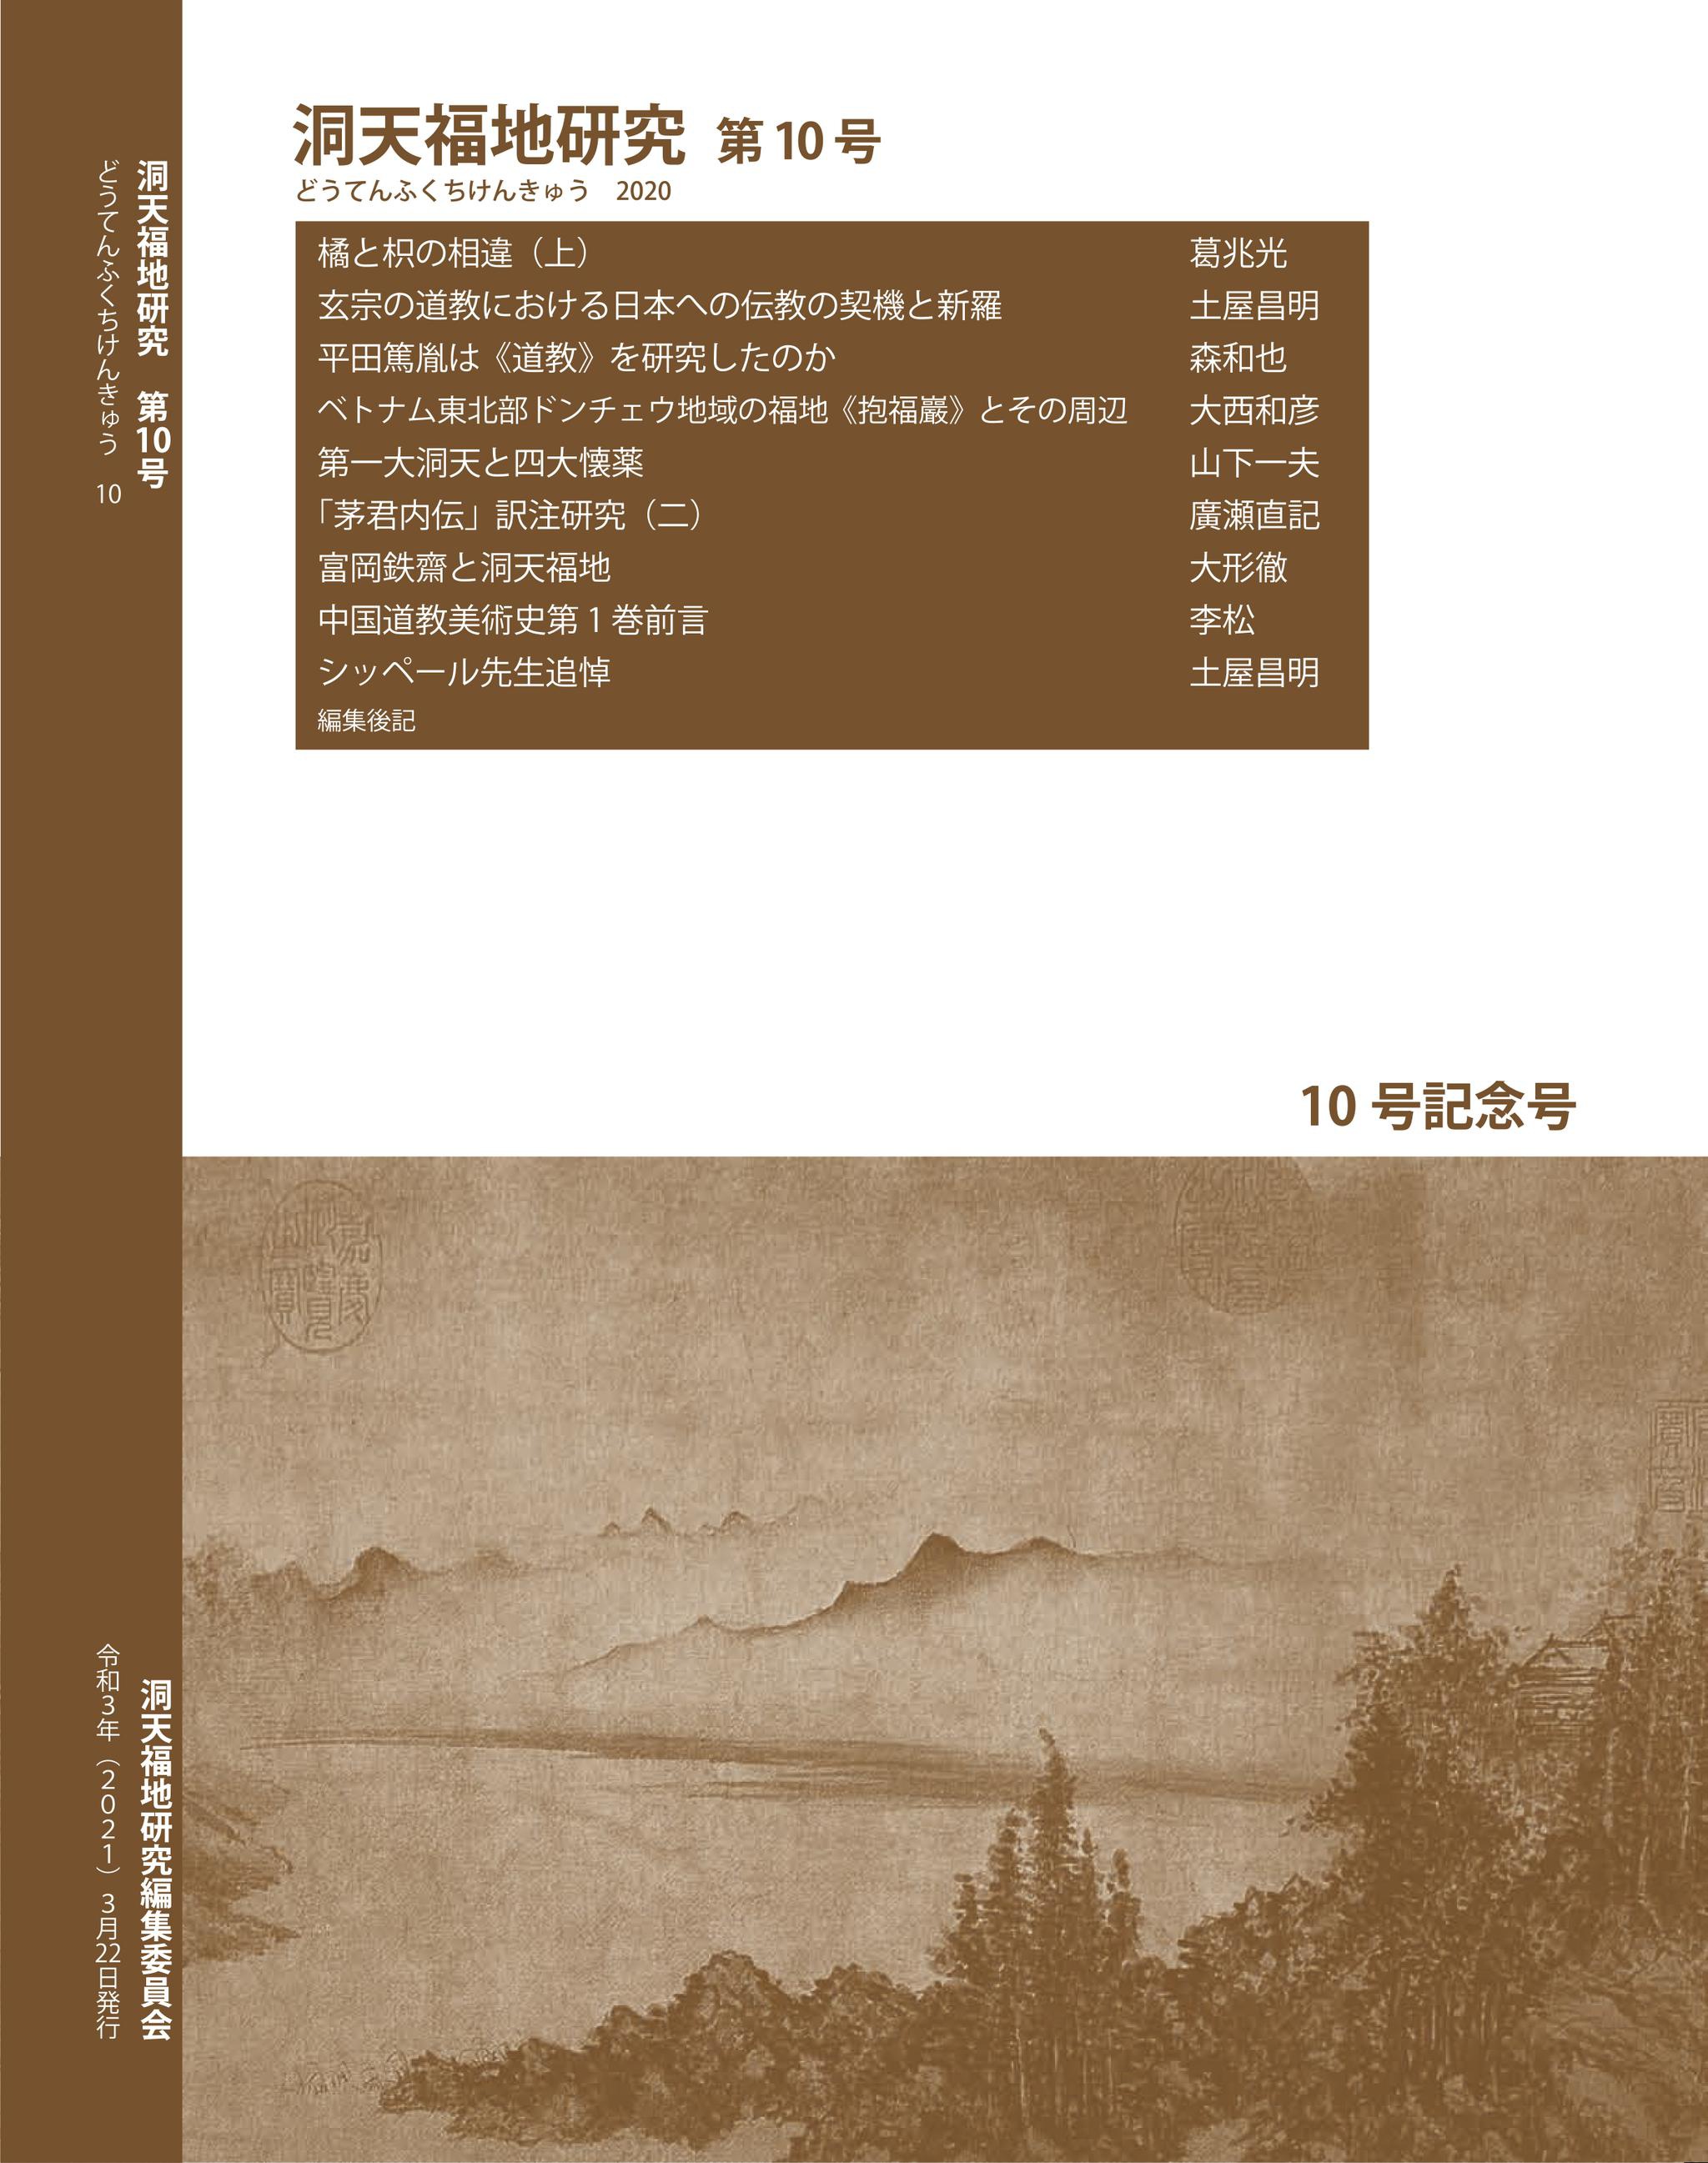 洞天寻隐丨《洞天福地研究》第10辑中文目录及编后语